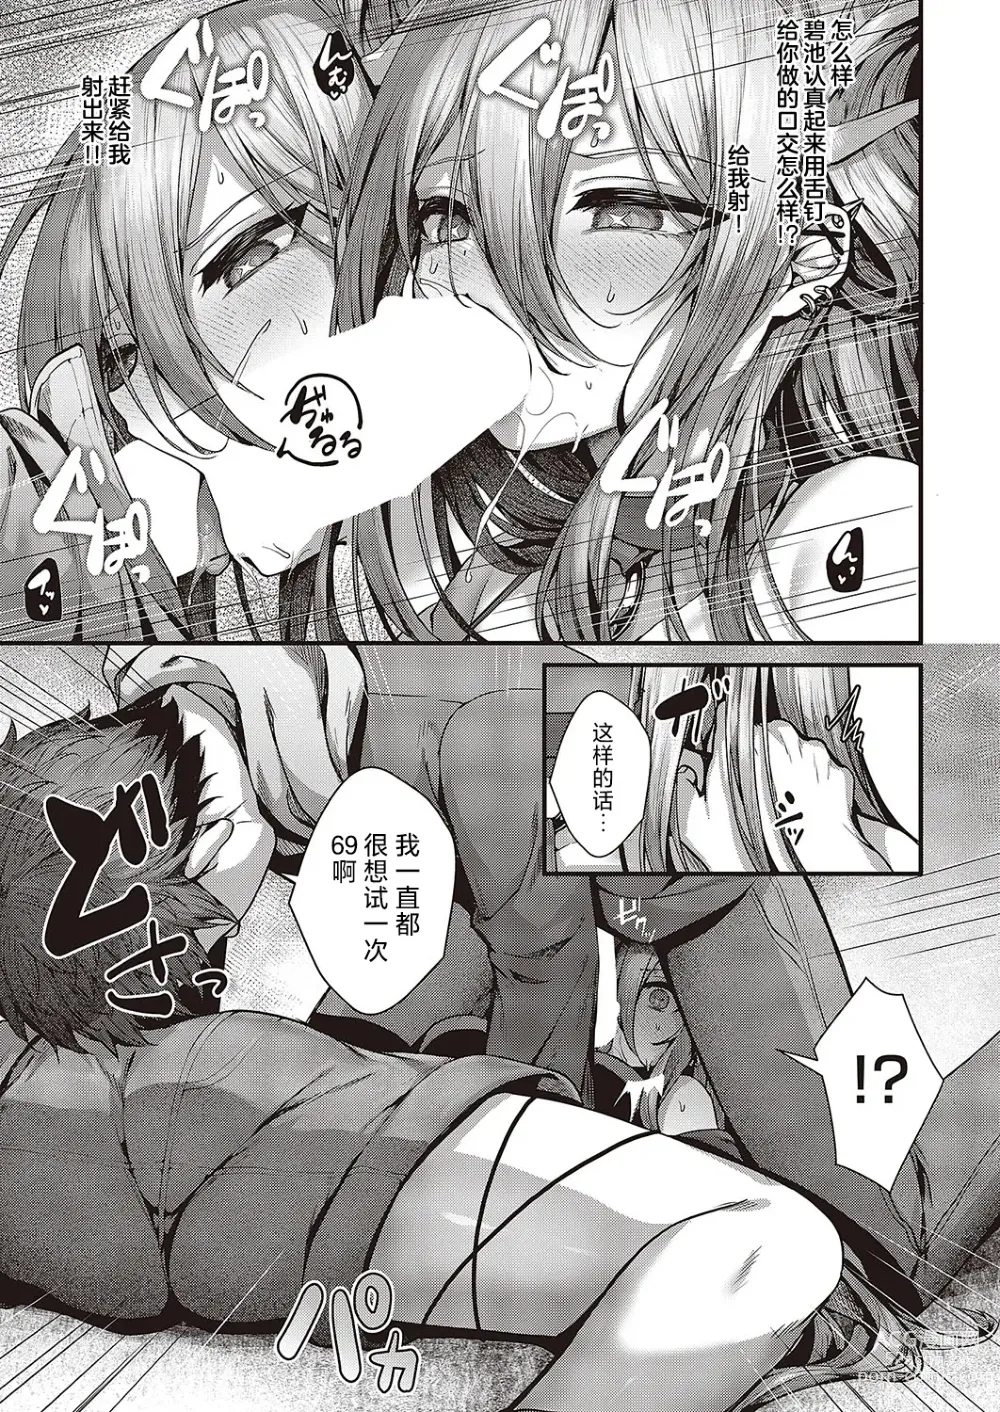 Page 15 of manga Madowase Ai